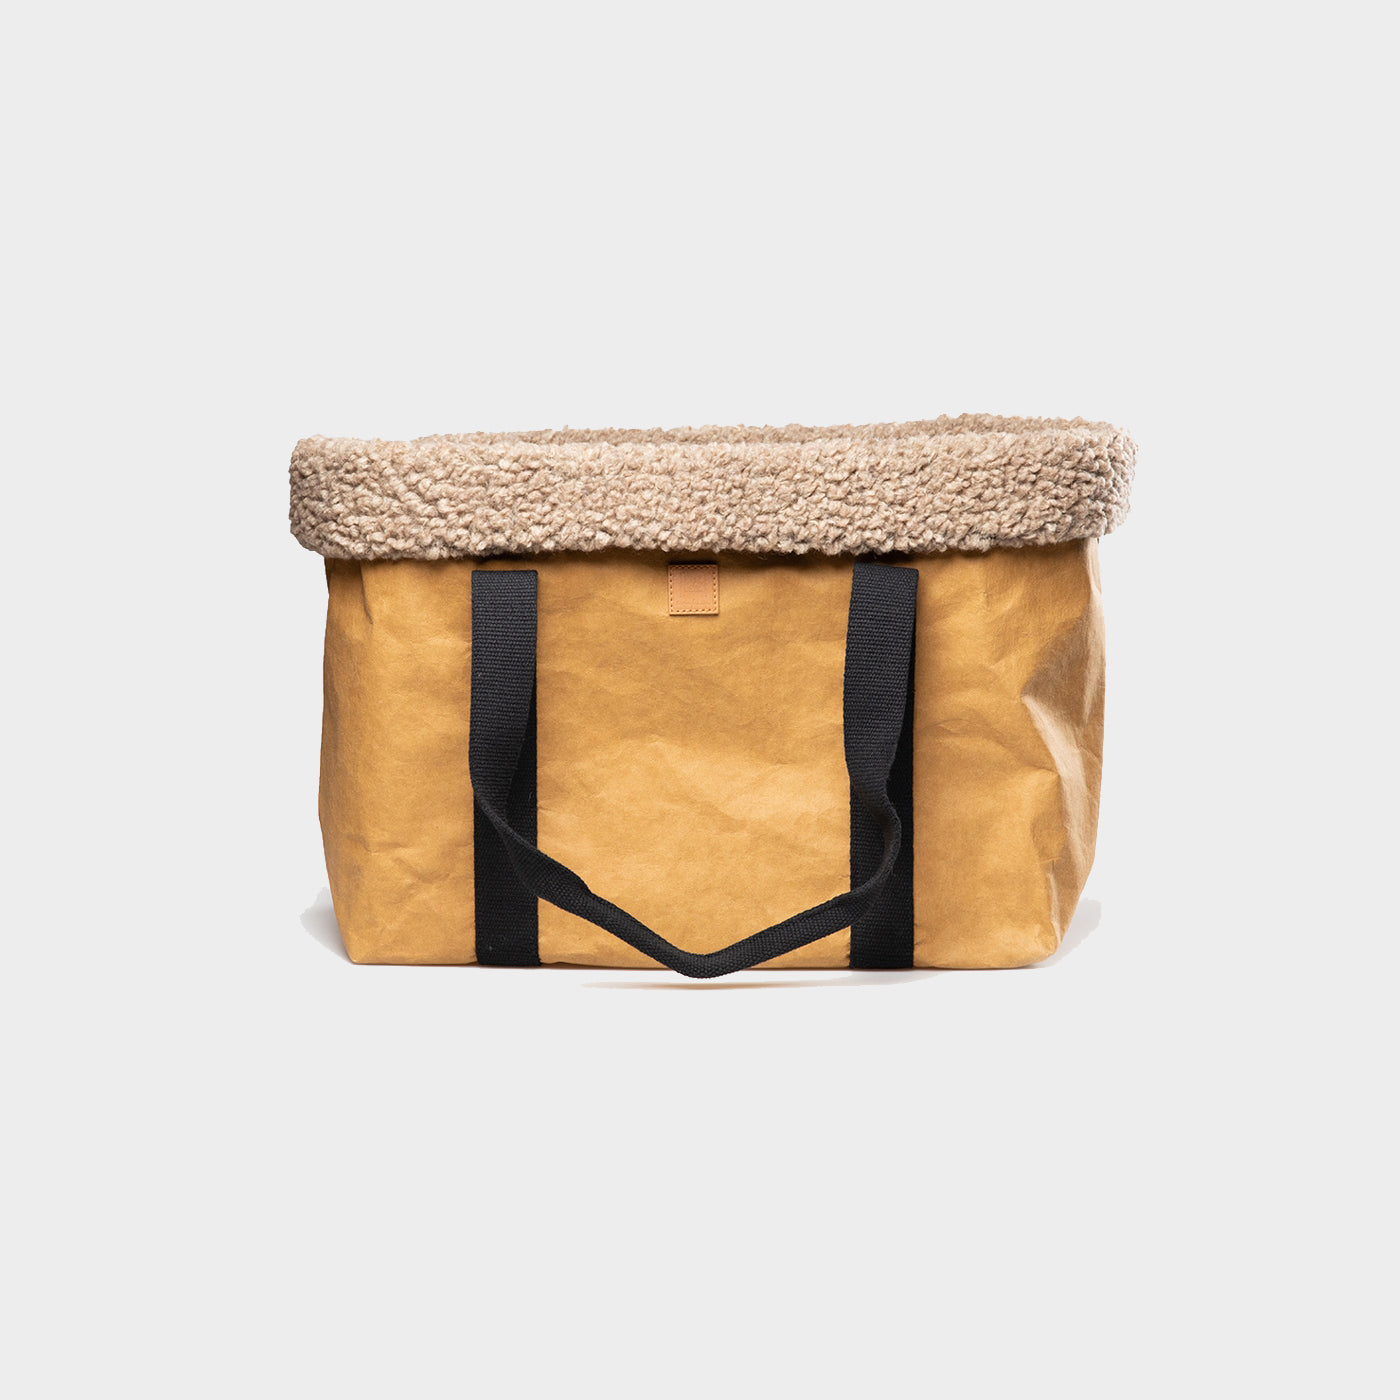 DOROTHEA - Paper dog bag